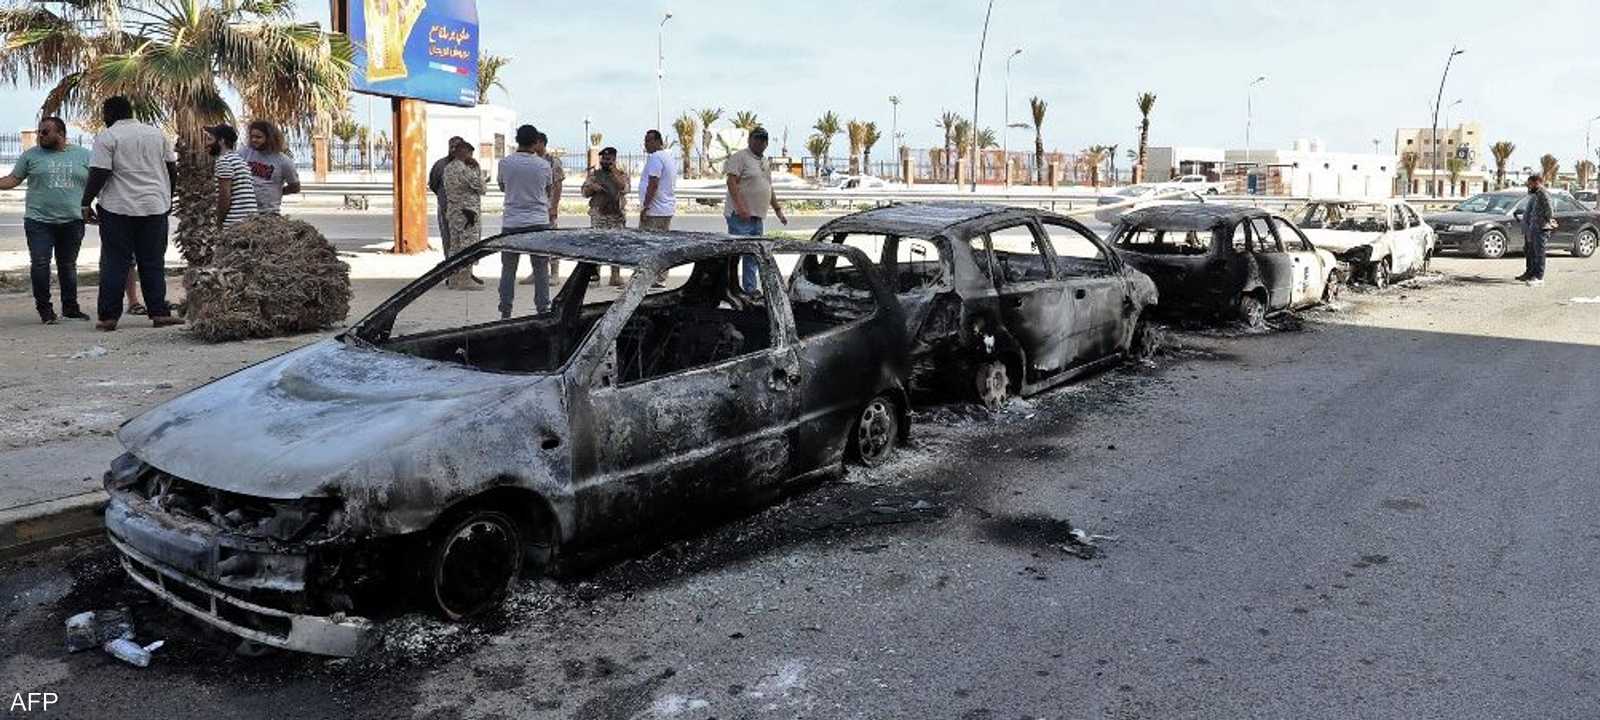 تشهد العاصمة الليبية، منذ الأسابيع الماضية، تدهورا أمنيا